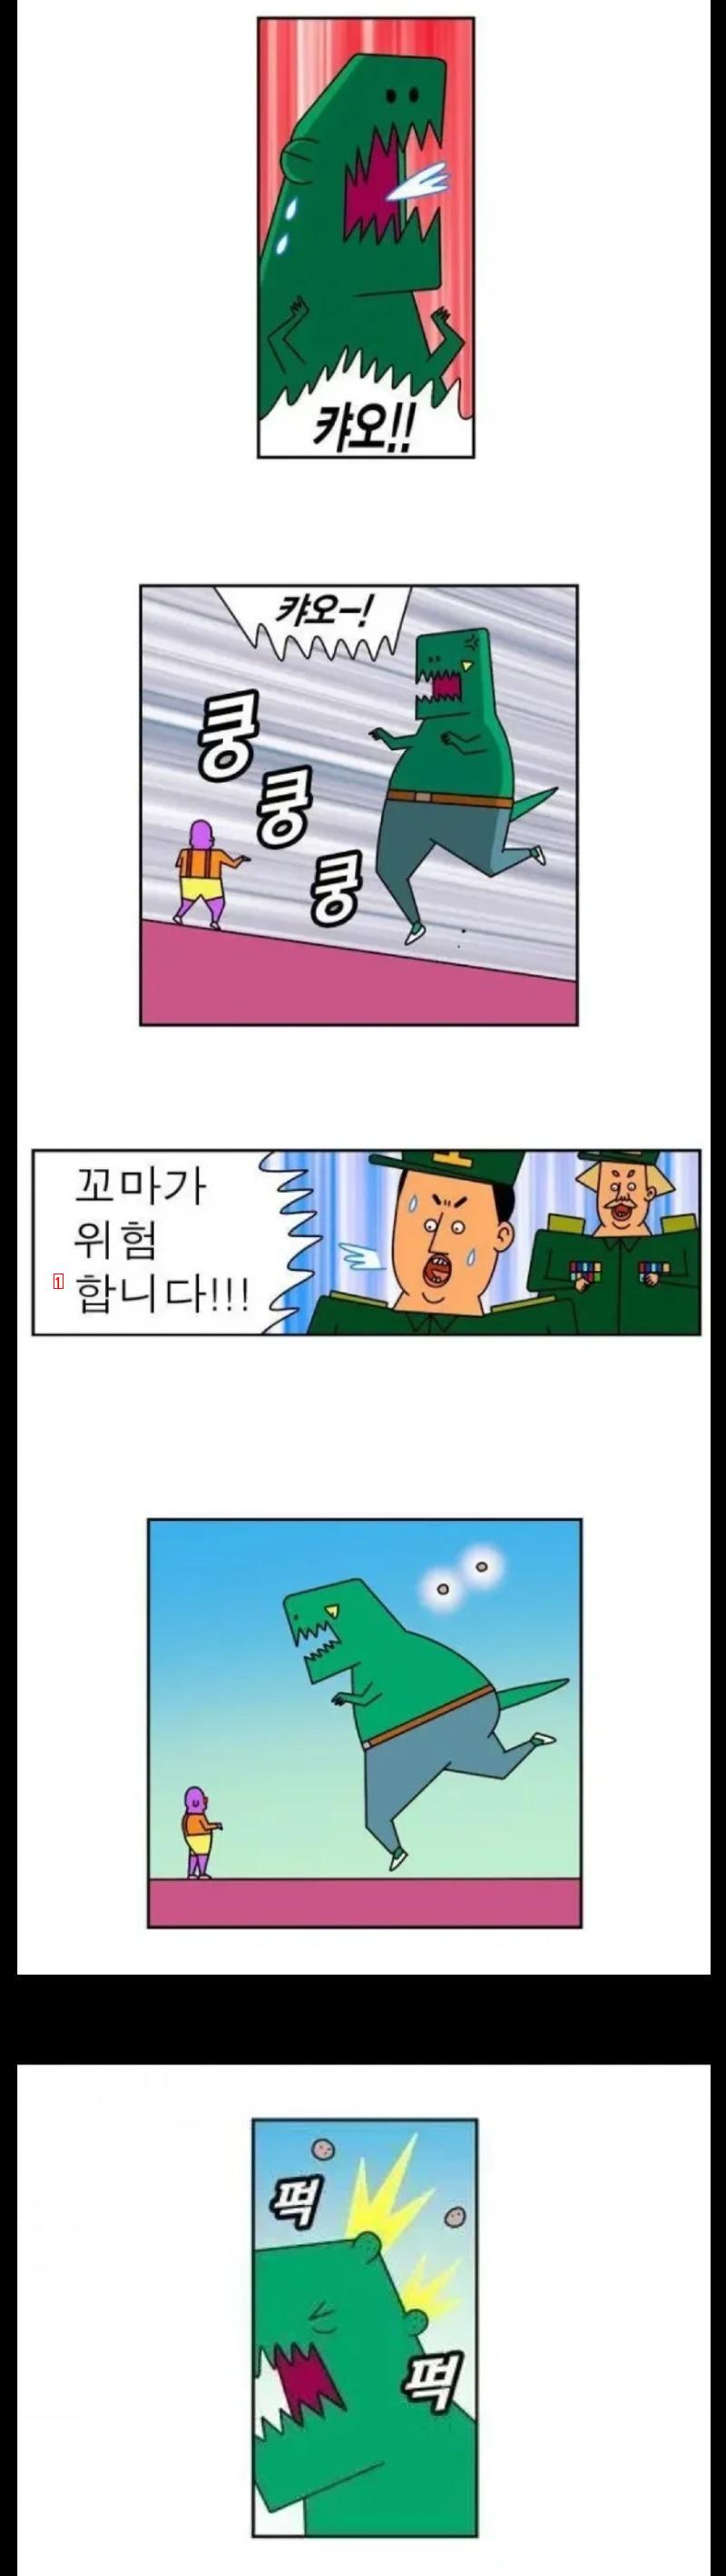 미친 결말의 웹툰(feat.귀귀)